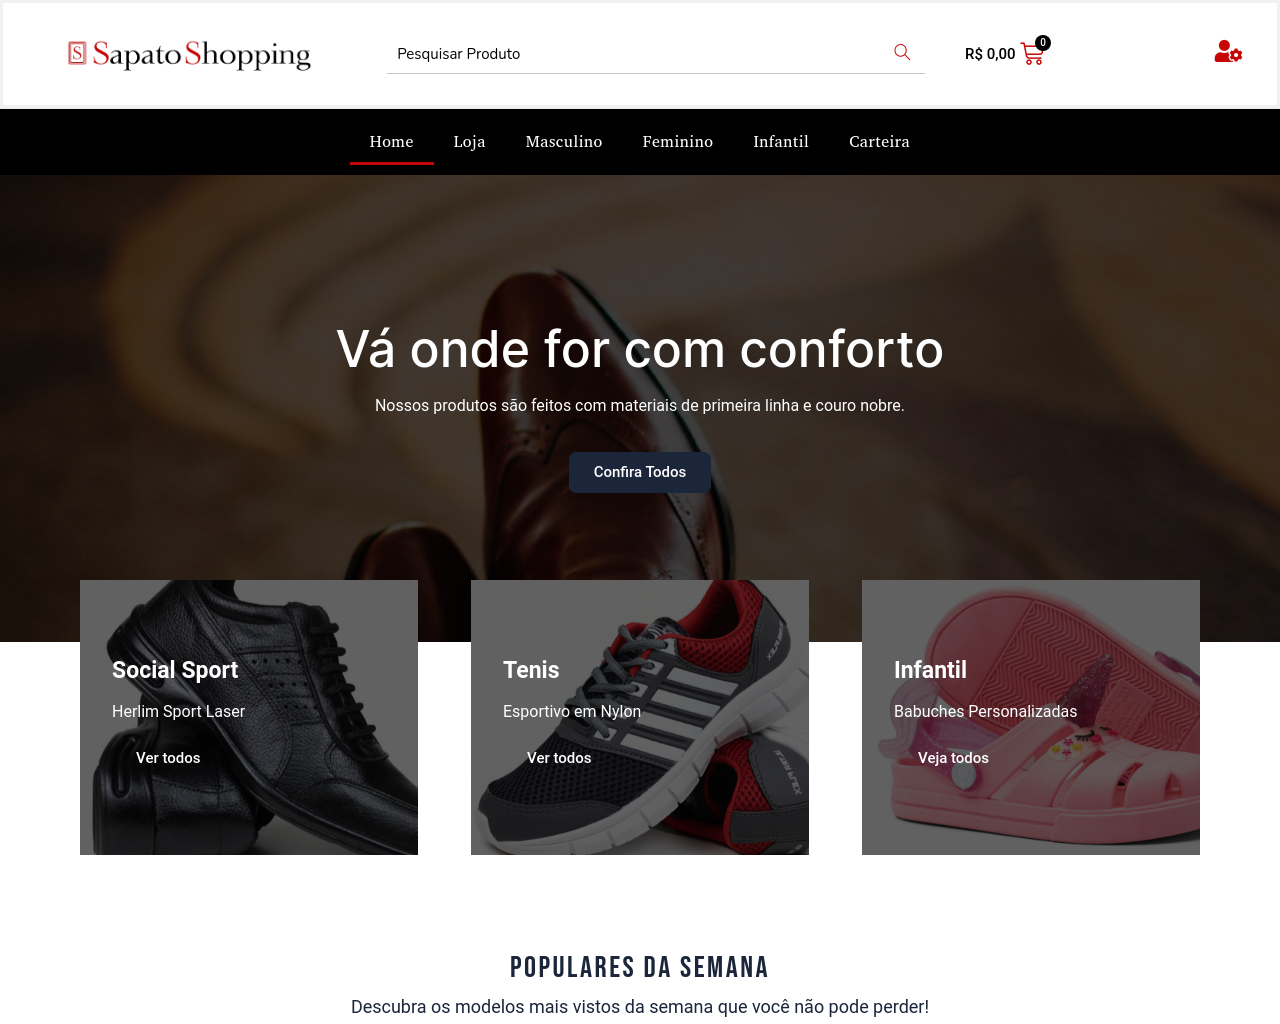 sapatoshopping.com.br